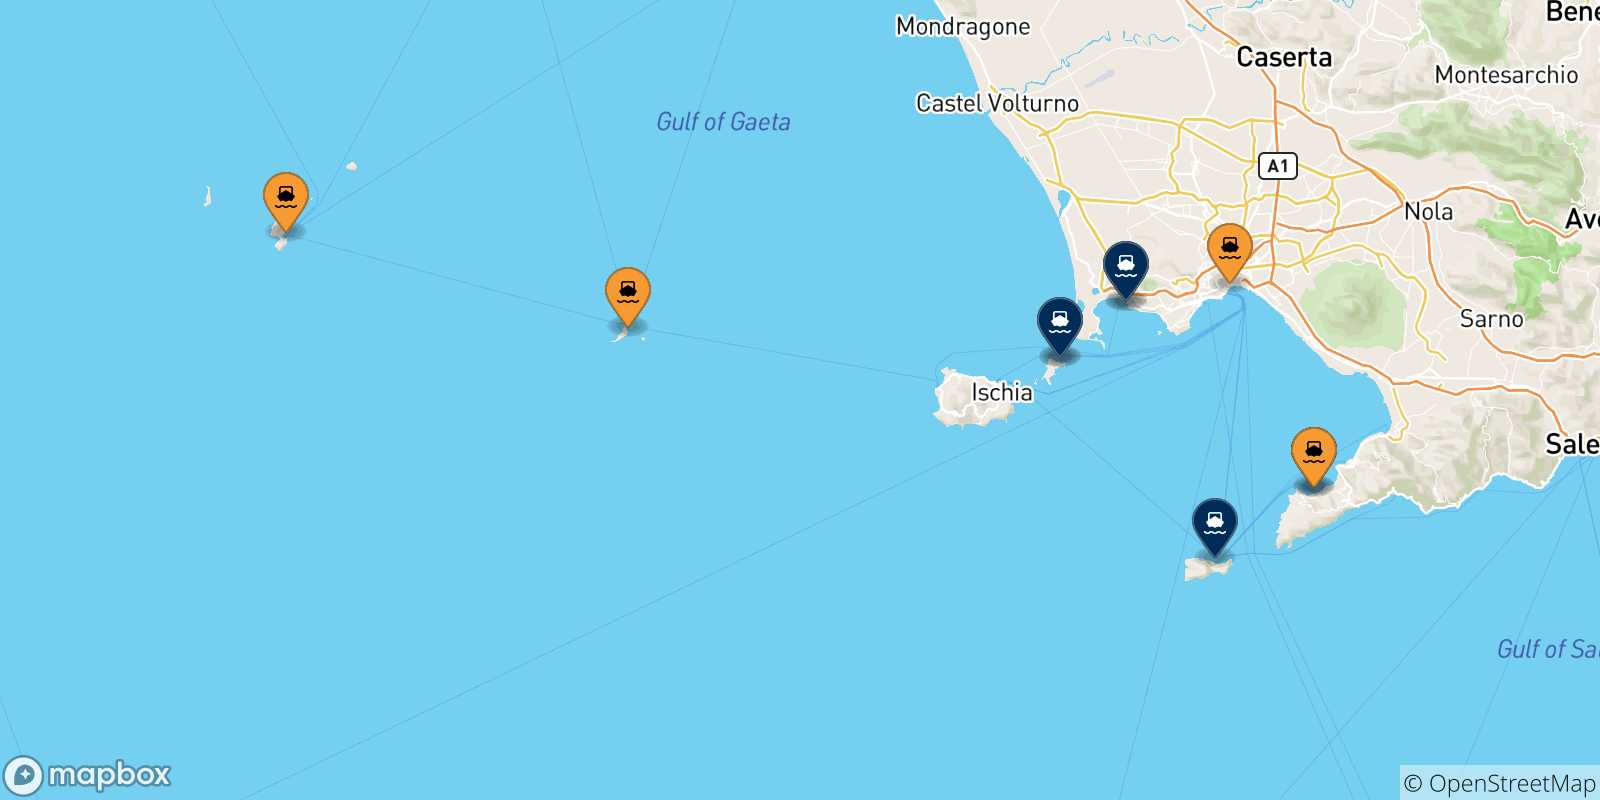 Mappa dei porti collegati con il Golfo Di Napoli